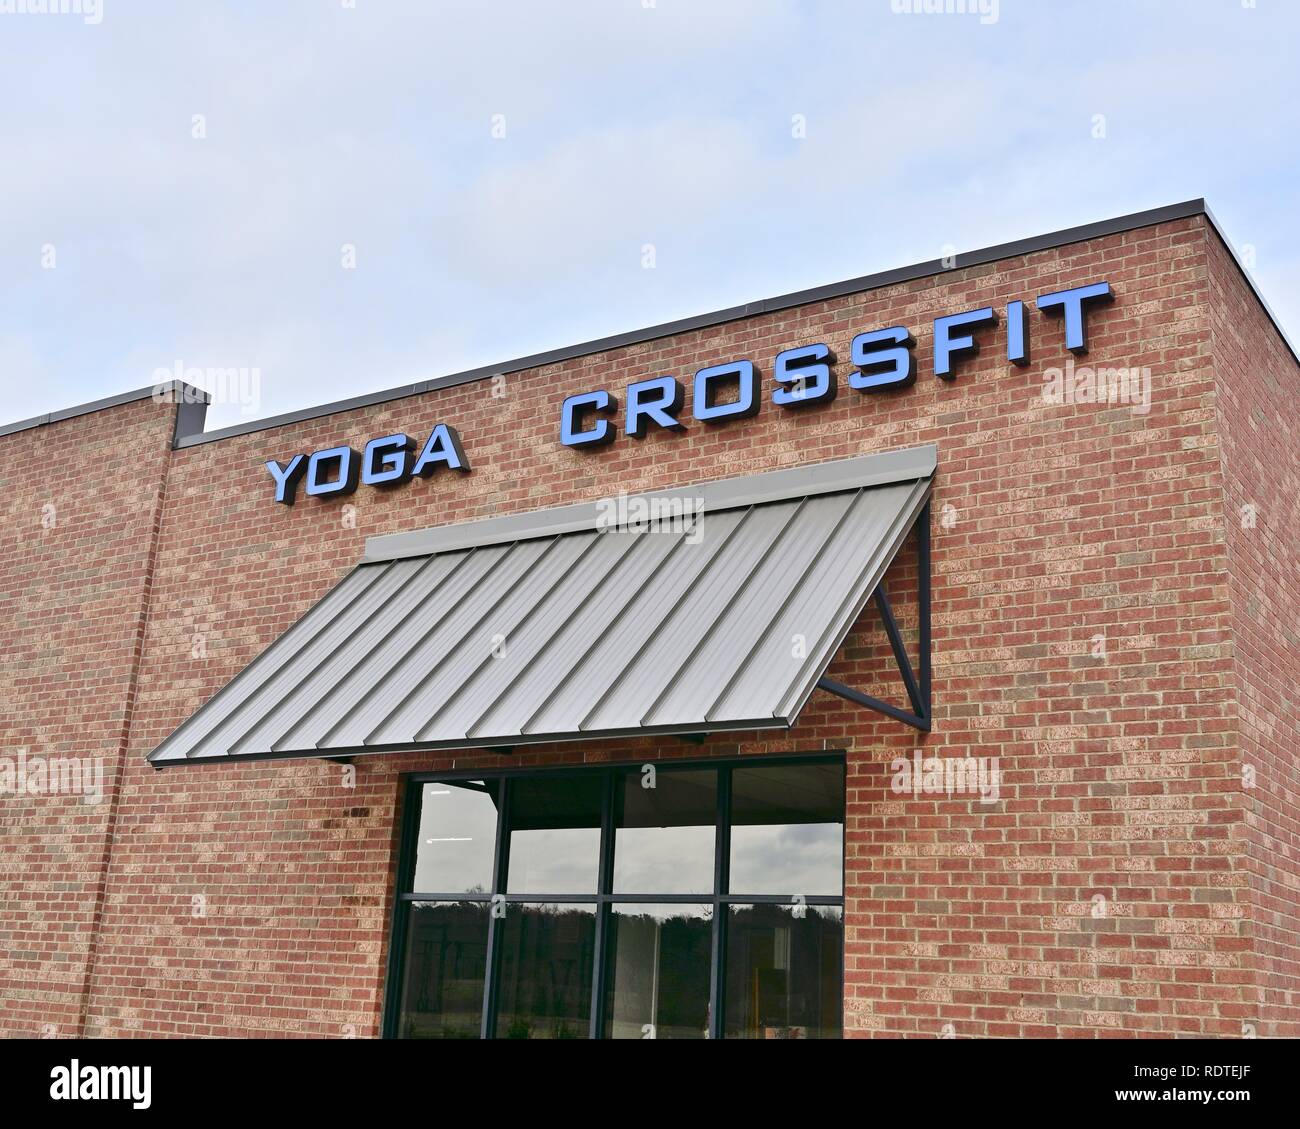 Crossfit e Yoga segno sopra un nuovo centro fitness o allenarvi in palestra o club di salute a Montgomery in Alabama, Stati Uniti d'America. Foto Stock